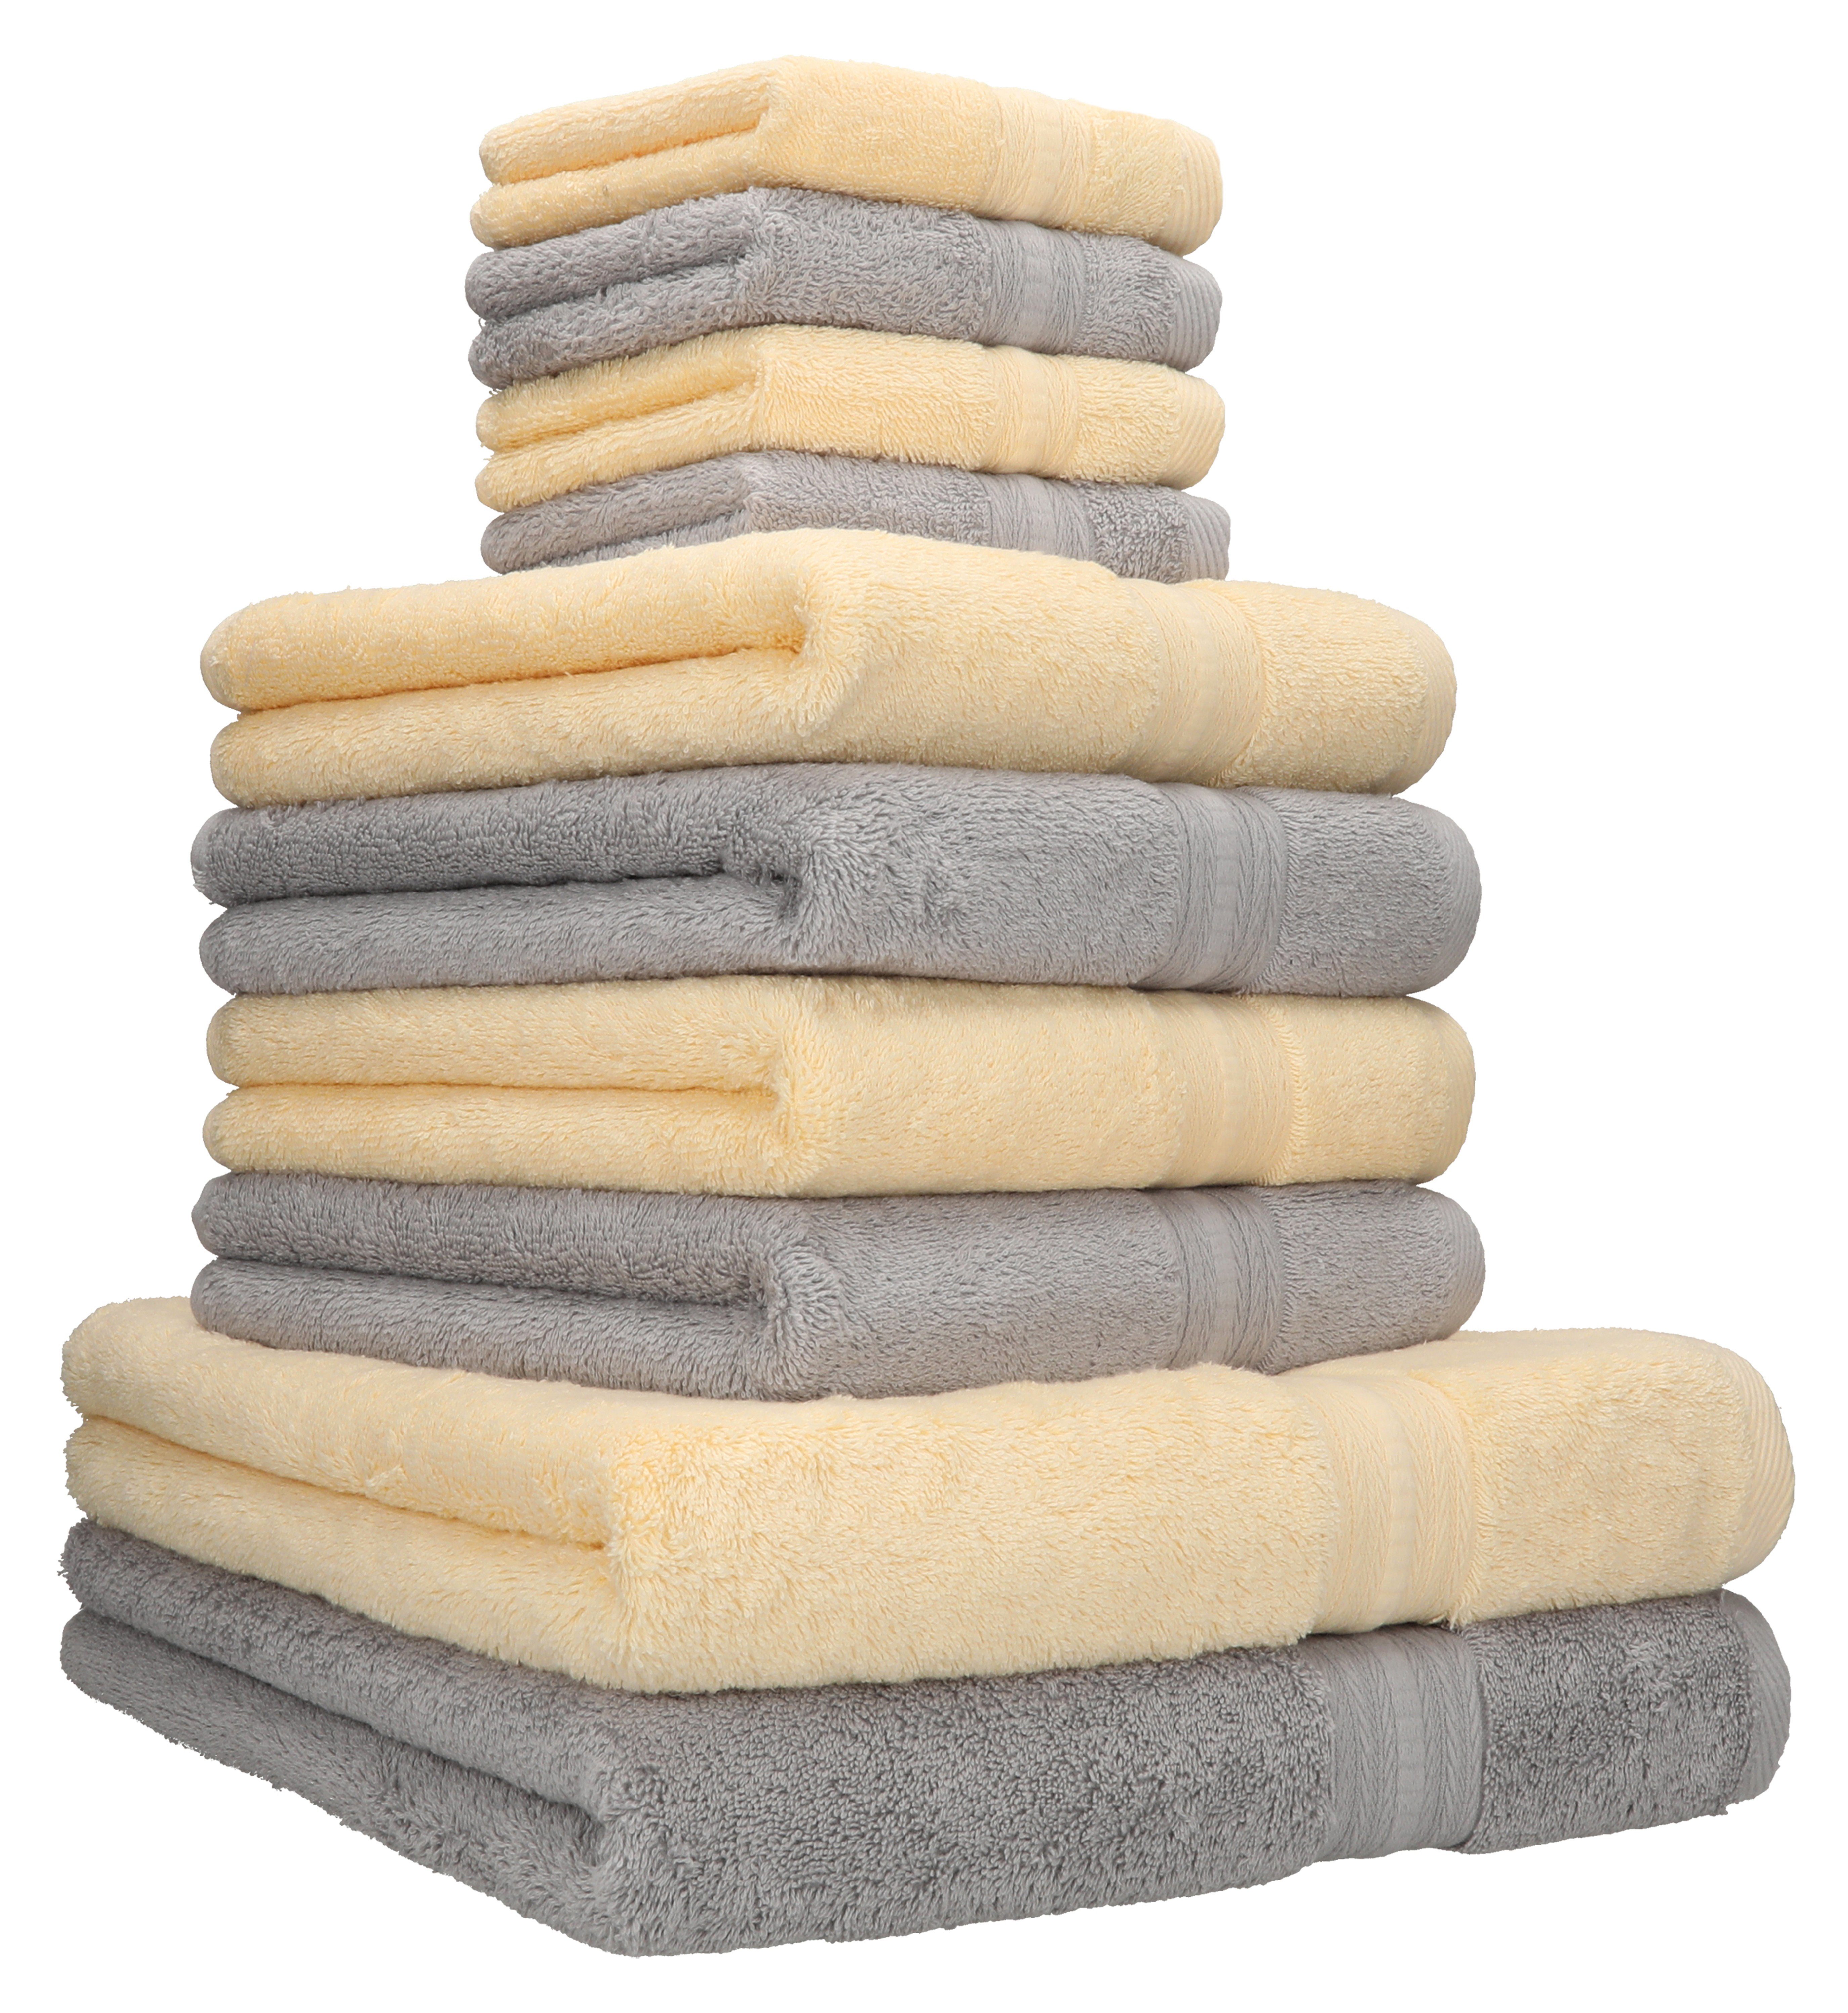 Betz Handtuch Set 10 TLG. Handtuch Set GOLD Qualität 600 g/m² beige & Silbergrau, 100% Baumwolle | Handtuch-Sets